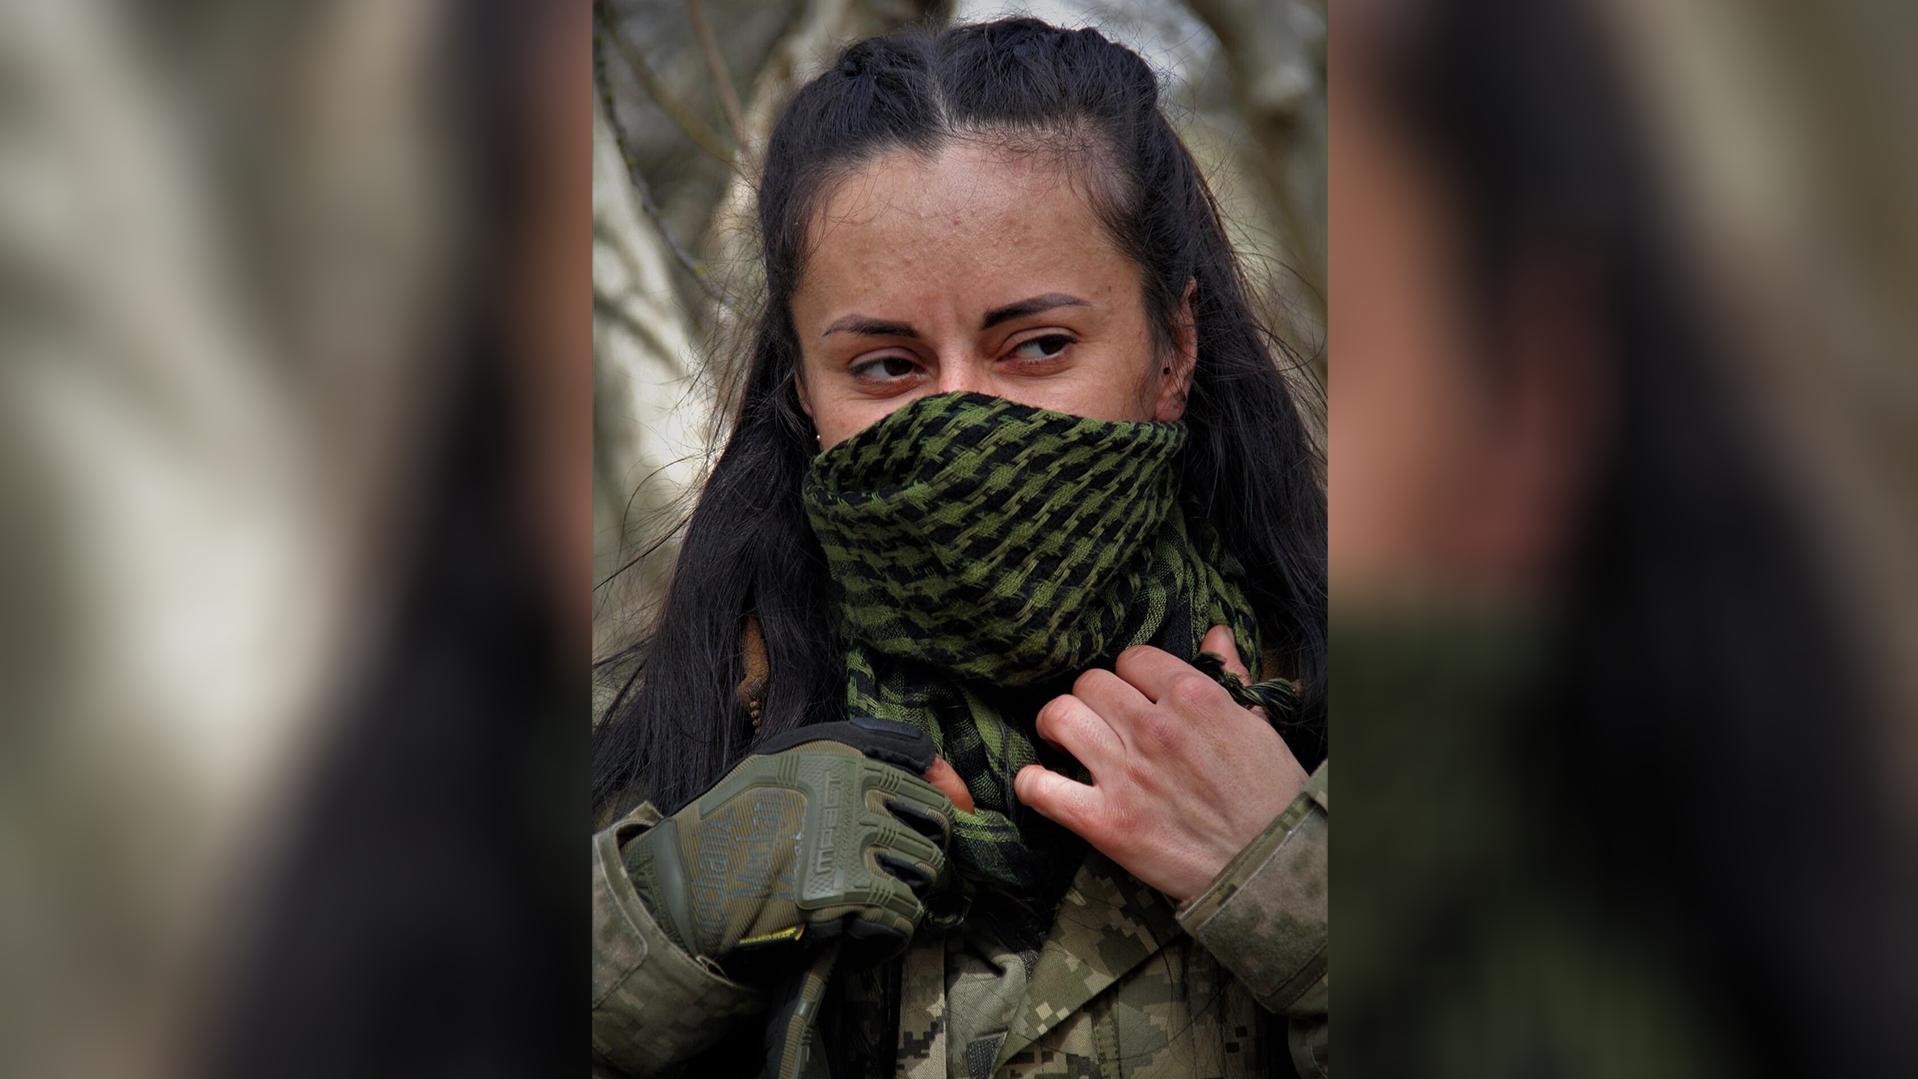 Ukrainisches Militär feiert Sniperin "Charcoal": "Ich werde bis zum